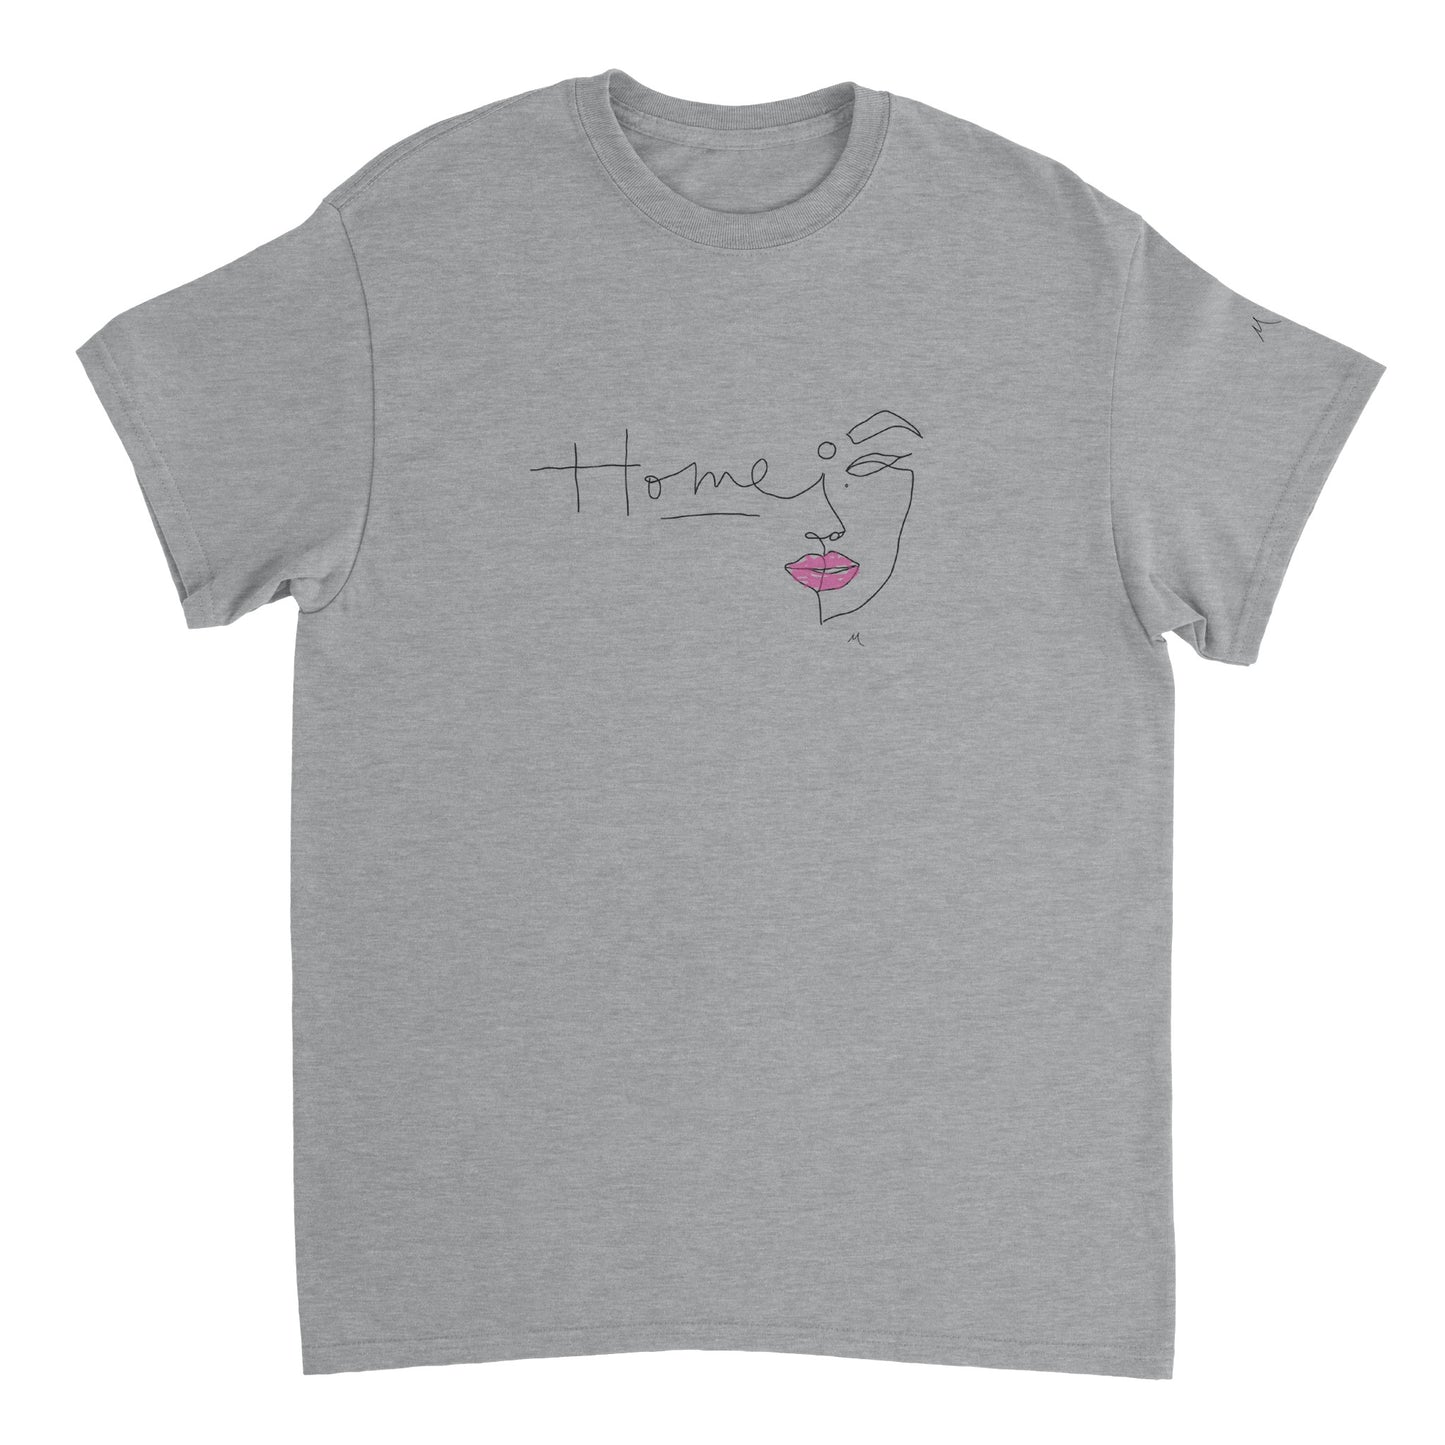 Home Rose Line Art Shirt